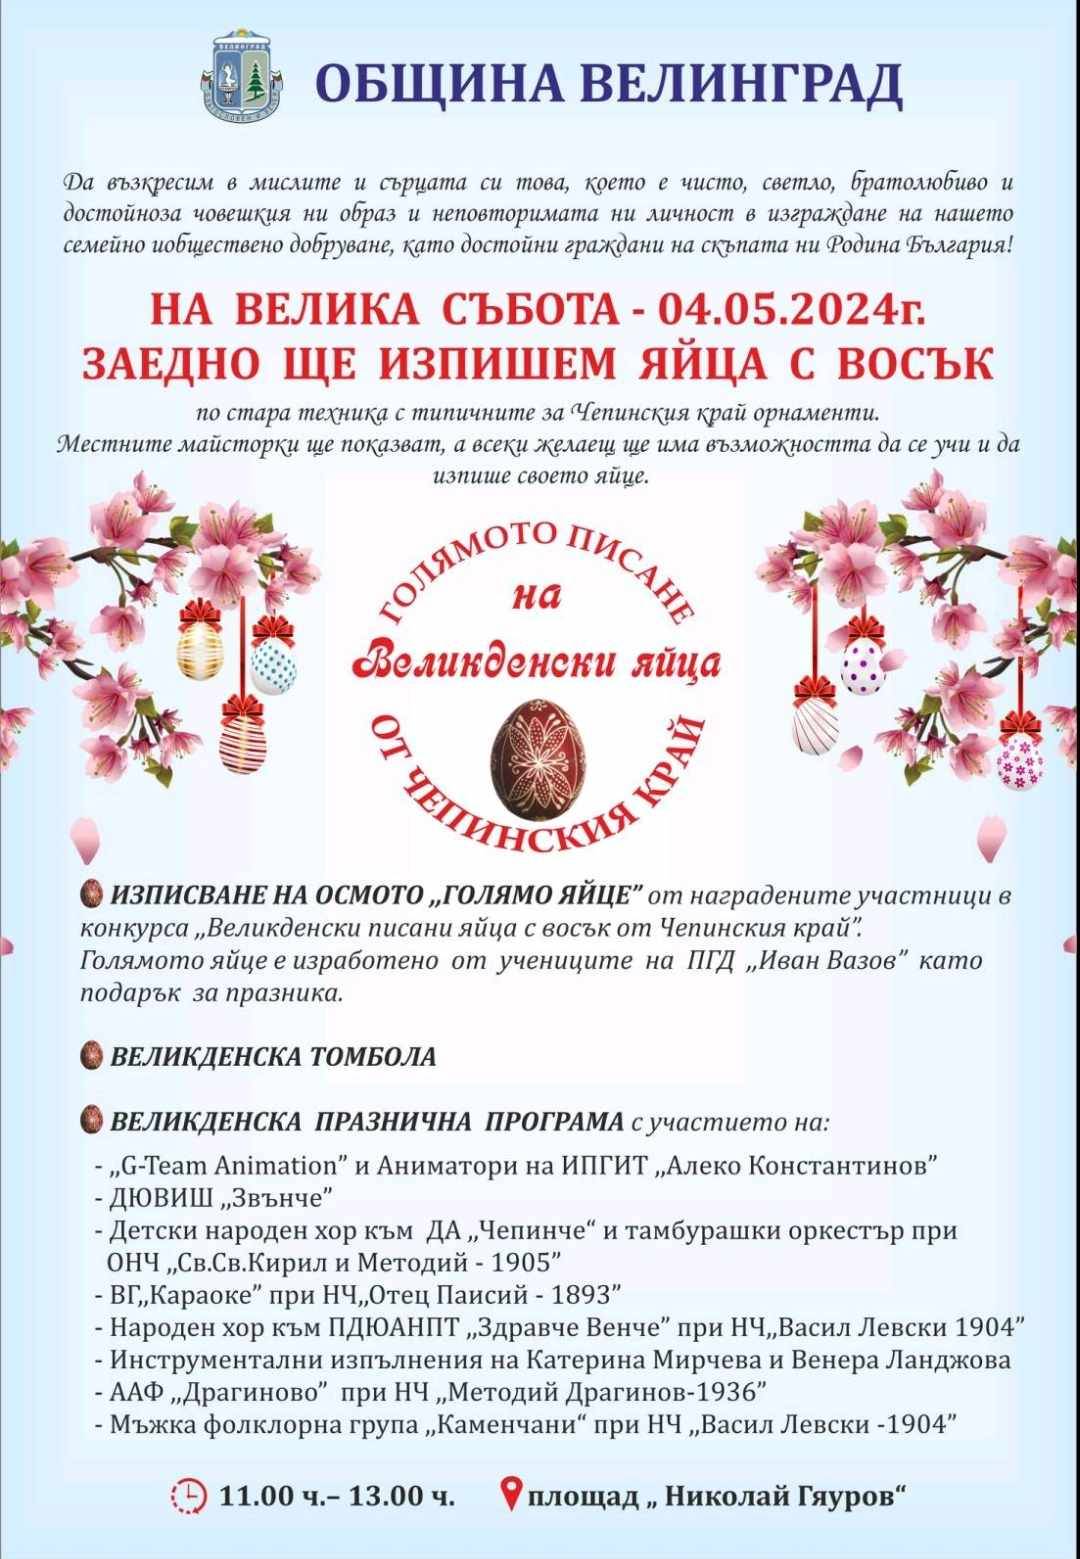 На 4 май за осми път ще се проведе Голямото писане на великденски яйца от Чепинския край